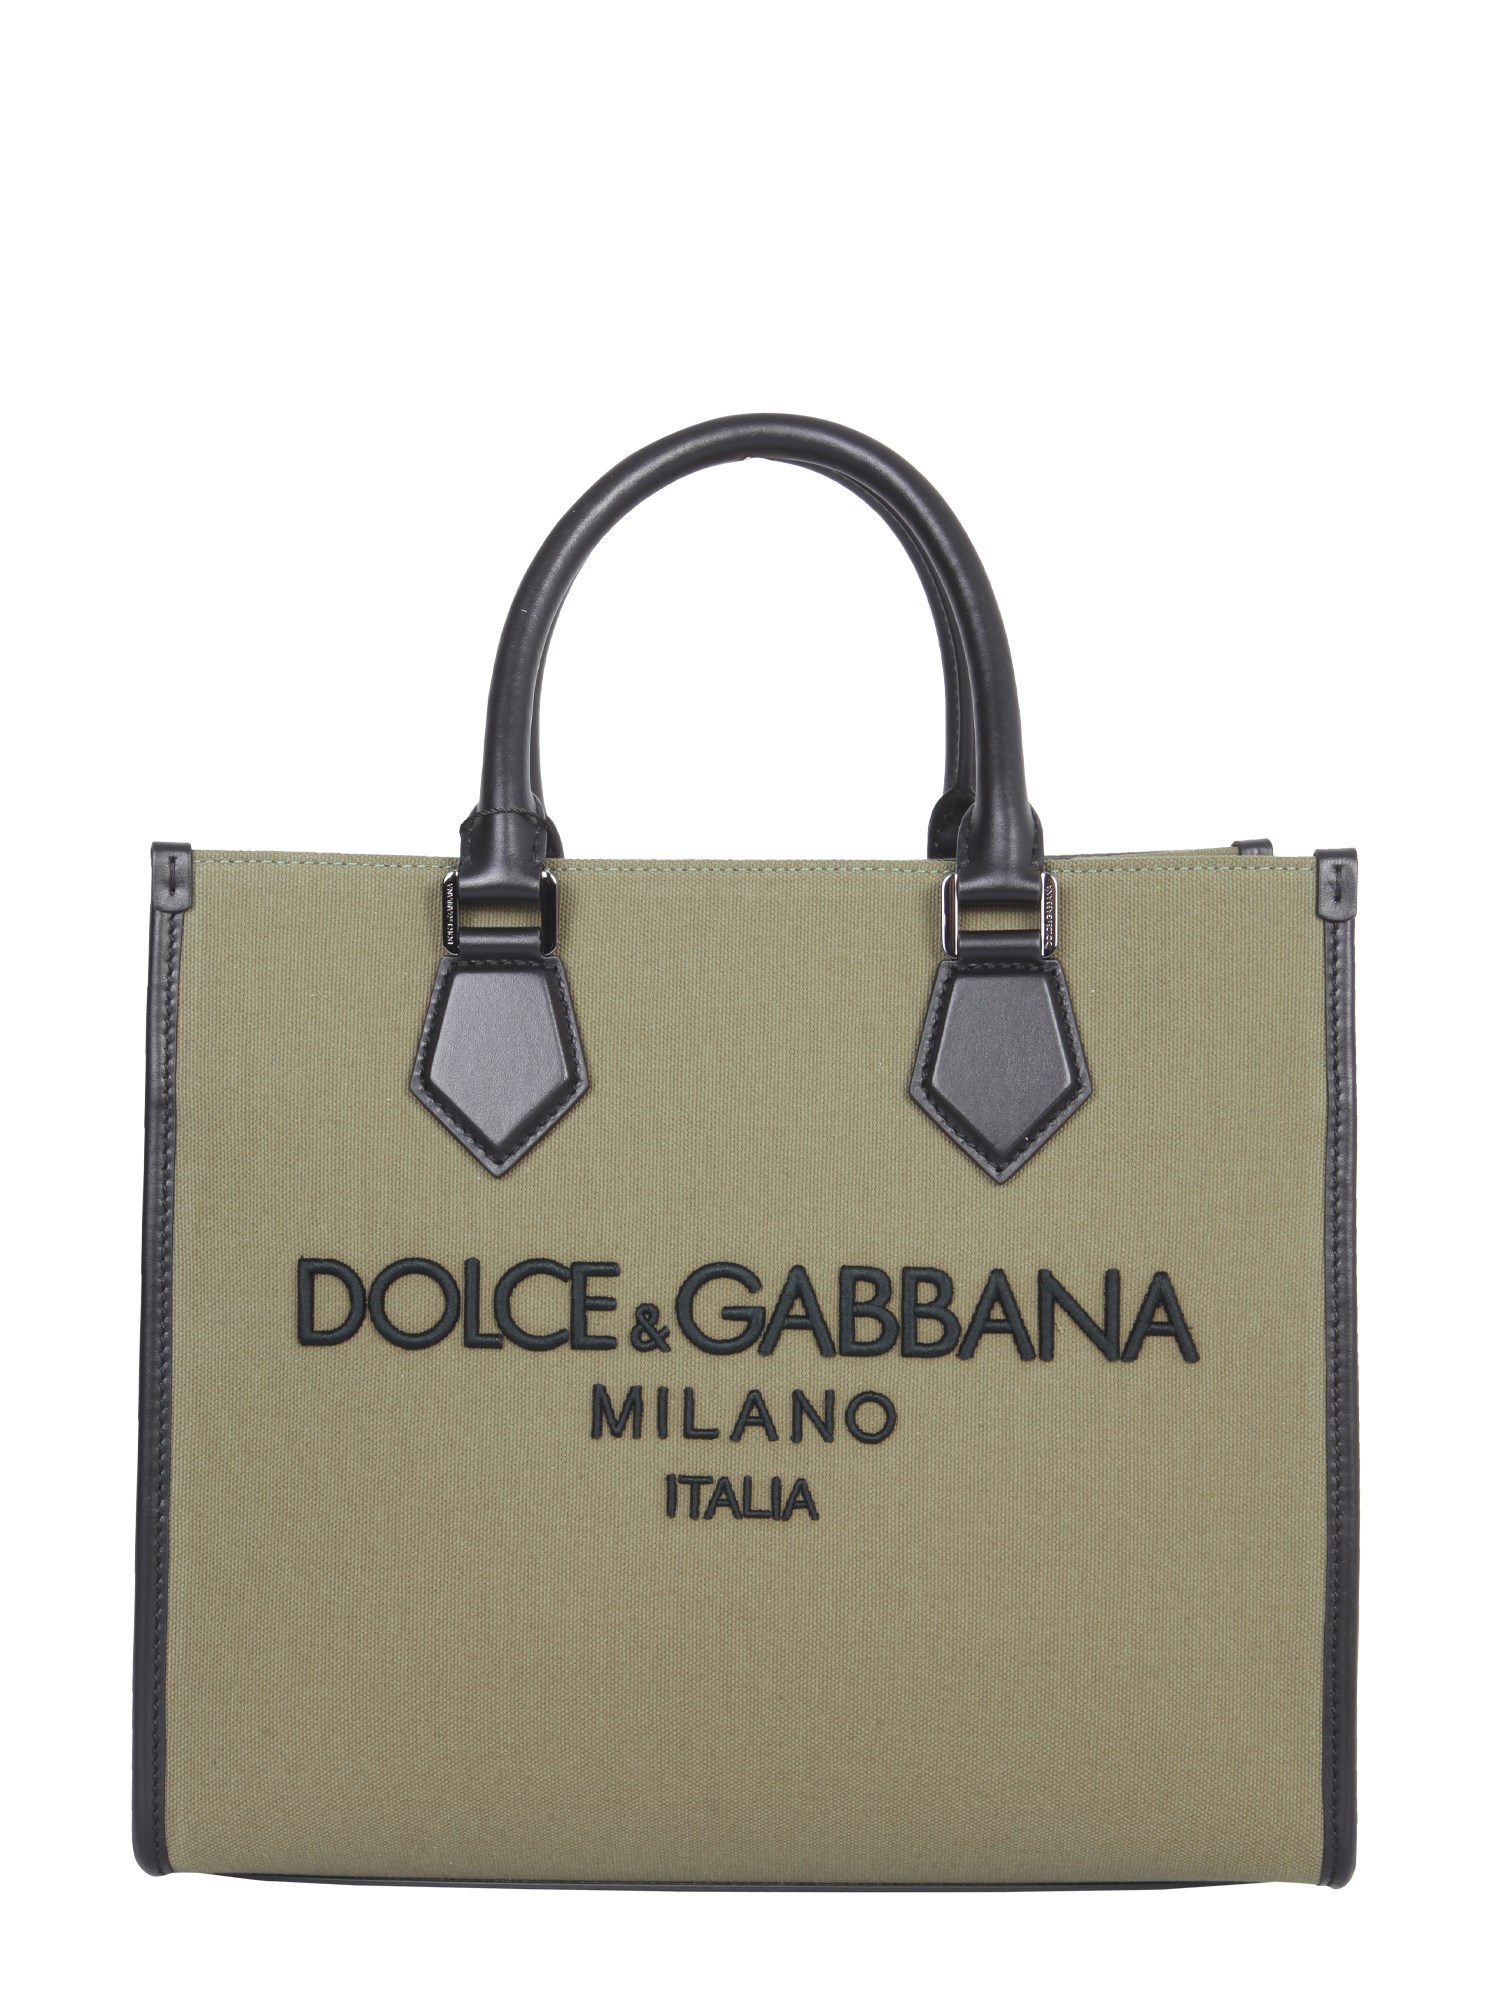 dolce & gabbana edge shopping bag